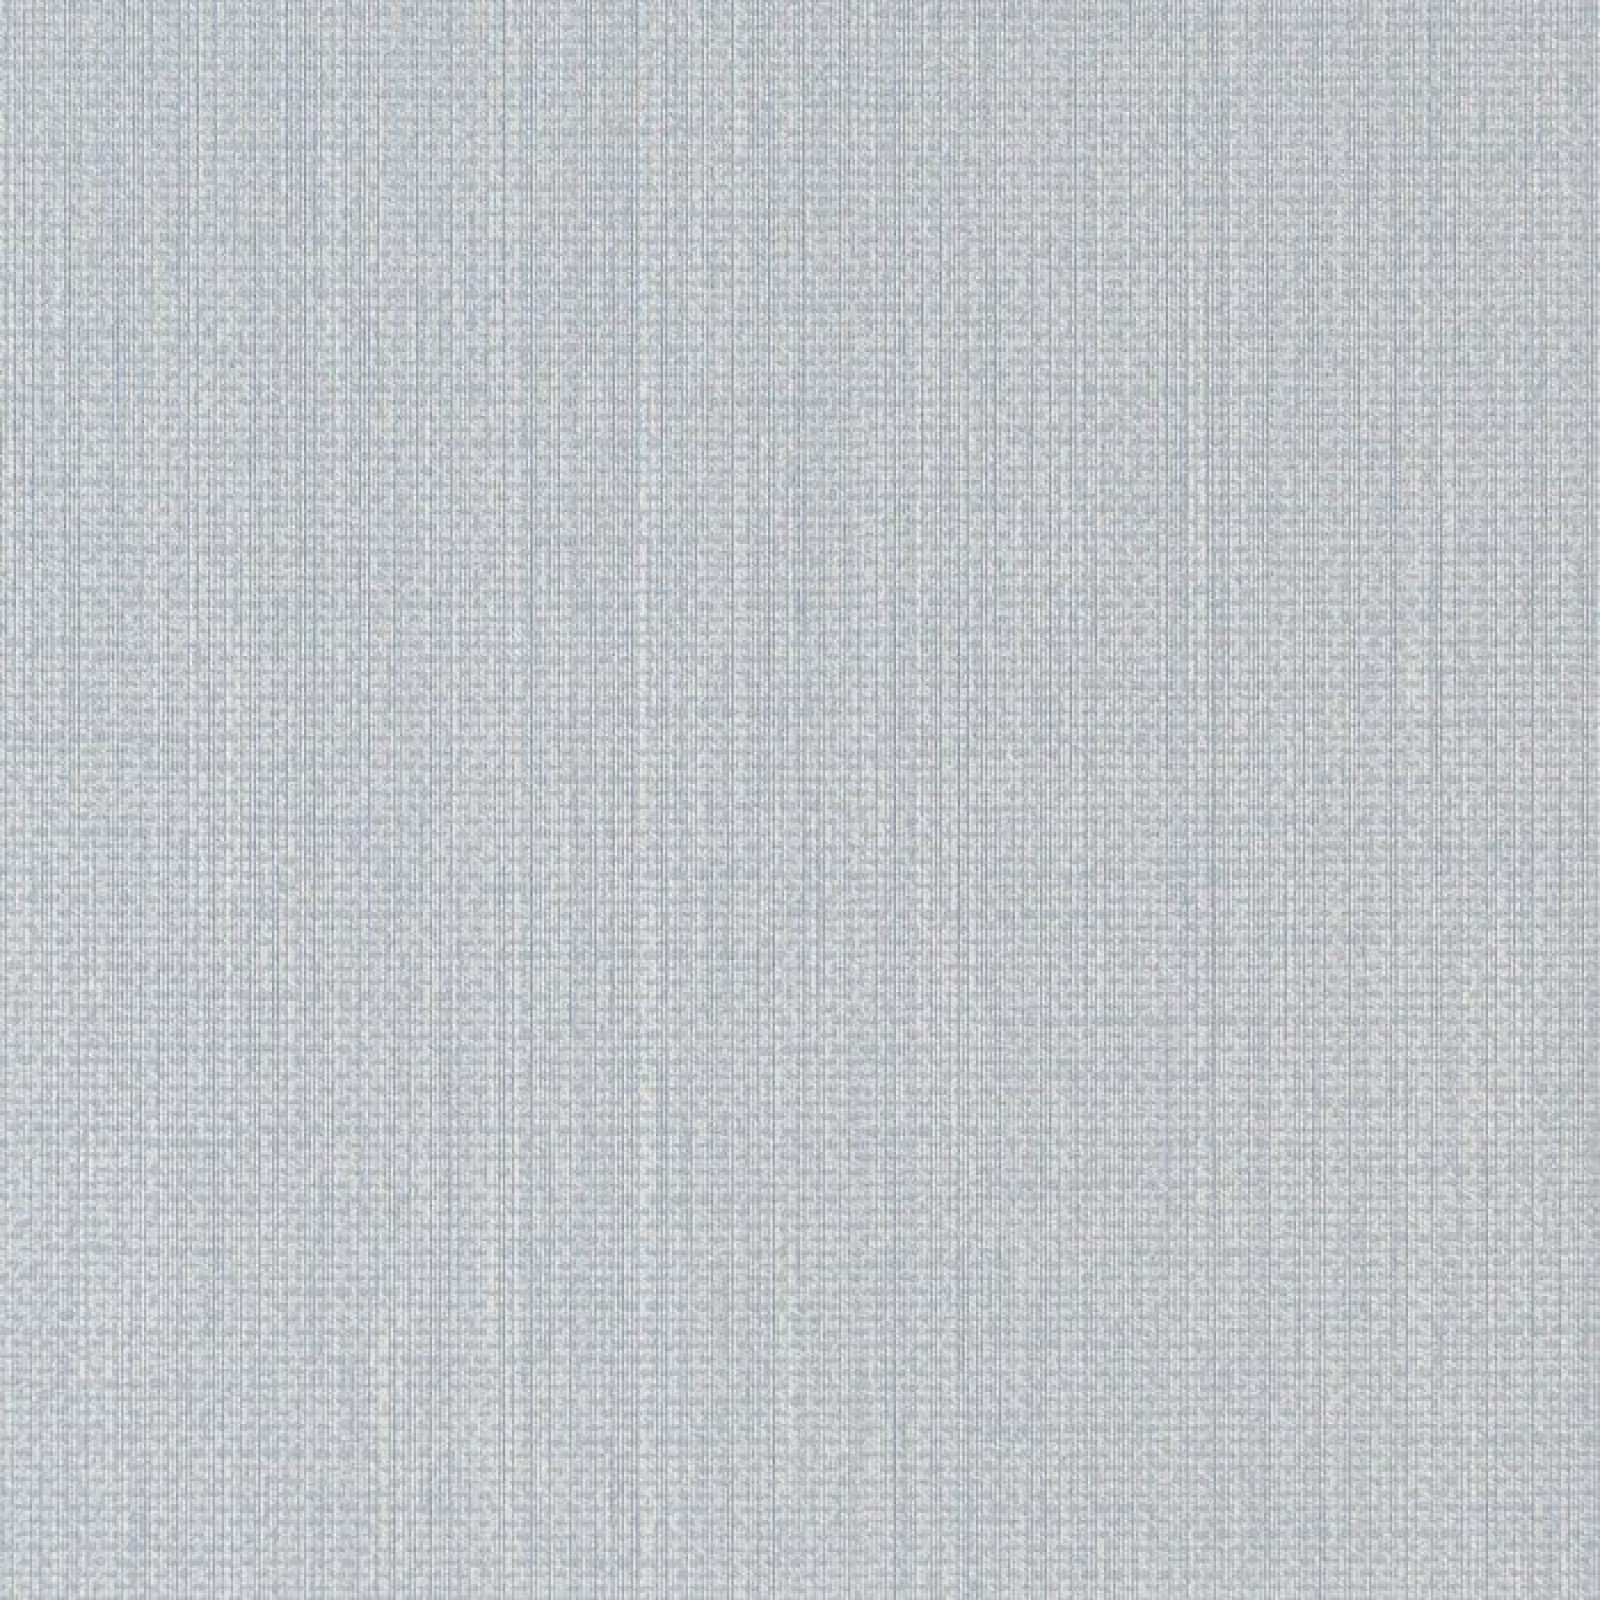 oboi-078762-rasch-textil-lyra